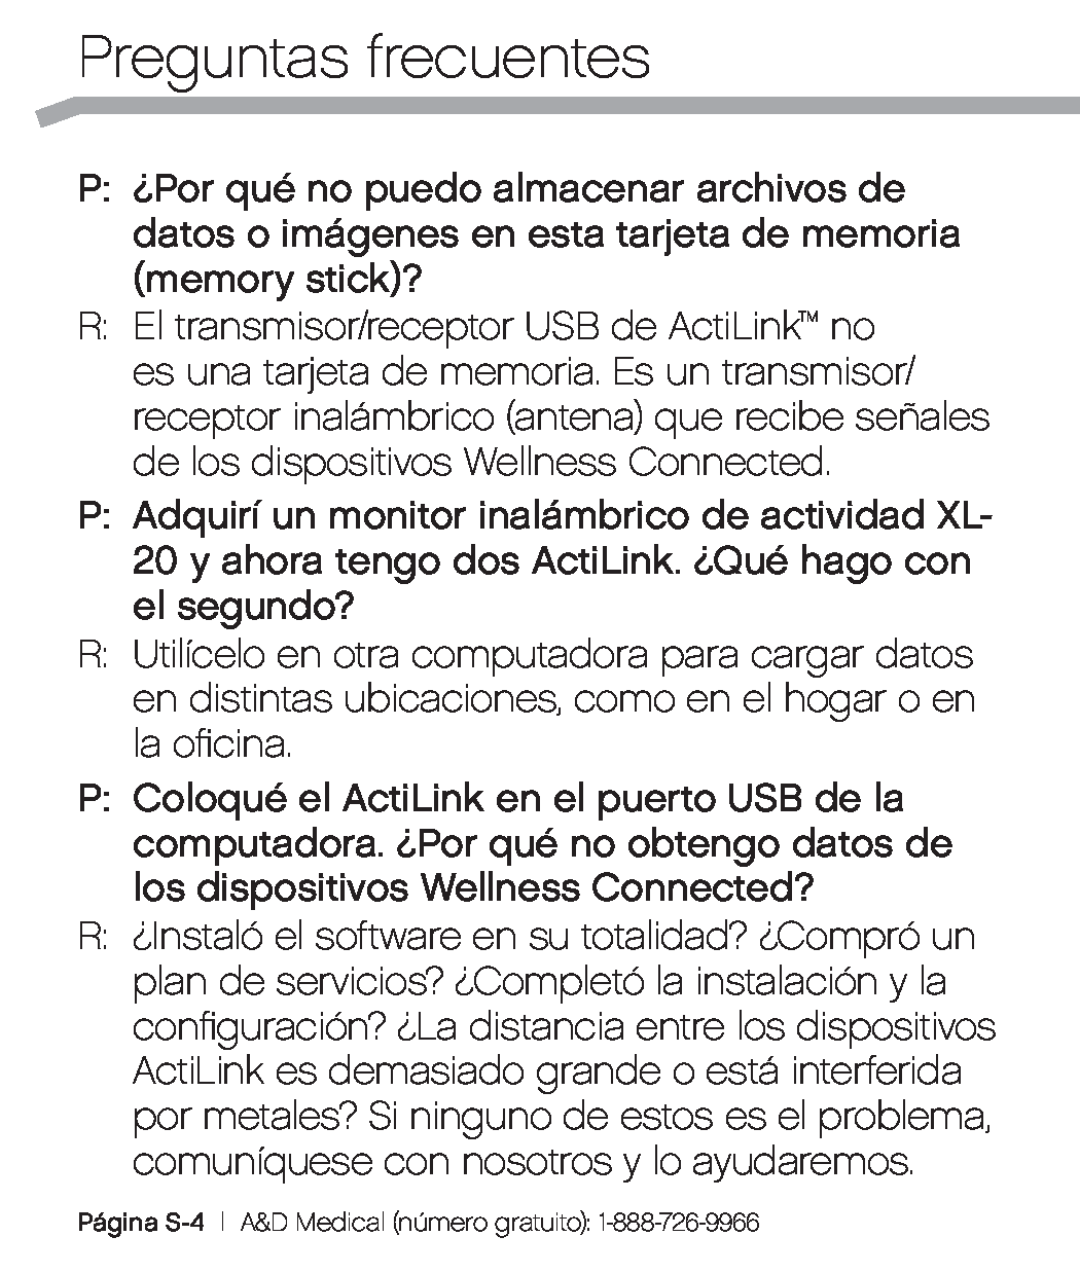 A&D XL-10 user manual Preguntas frecuentes, Página S-4 A&D Medical número gratuito 